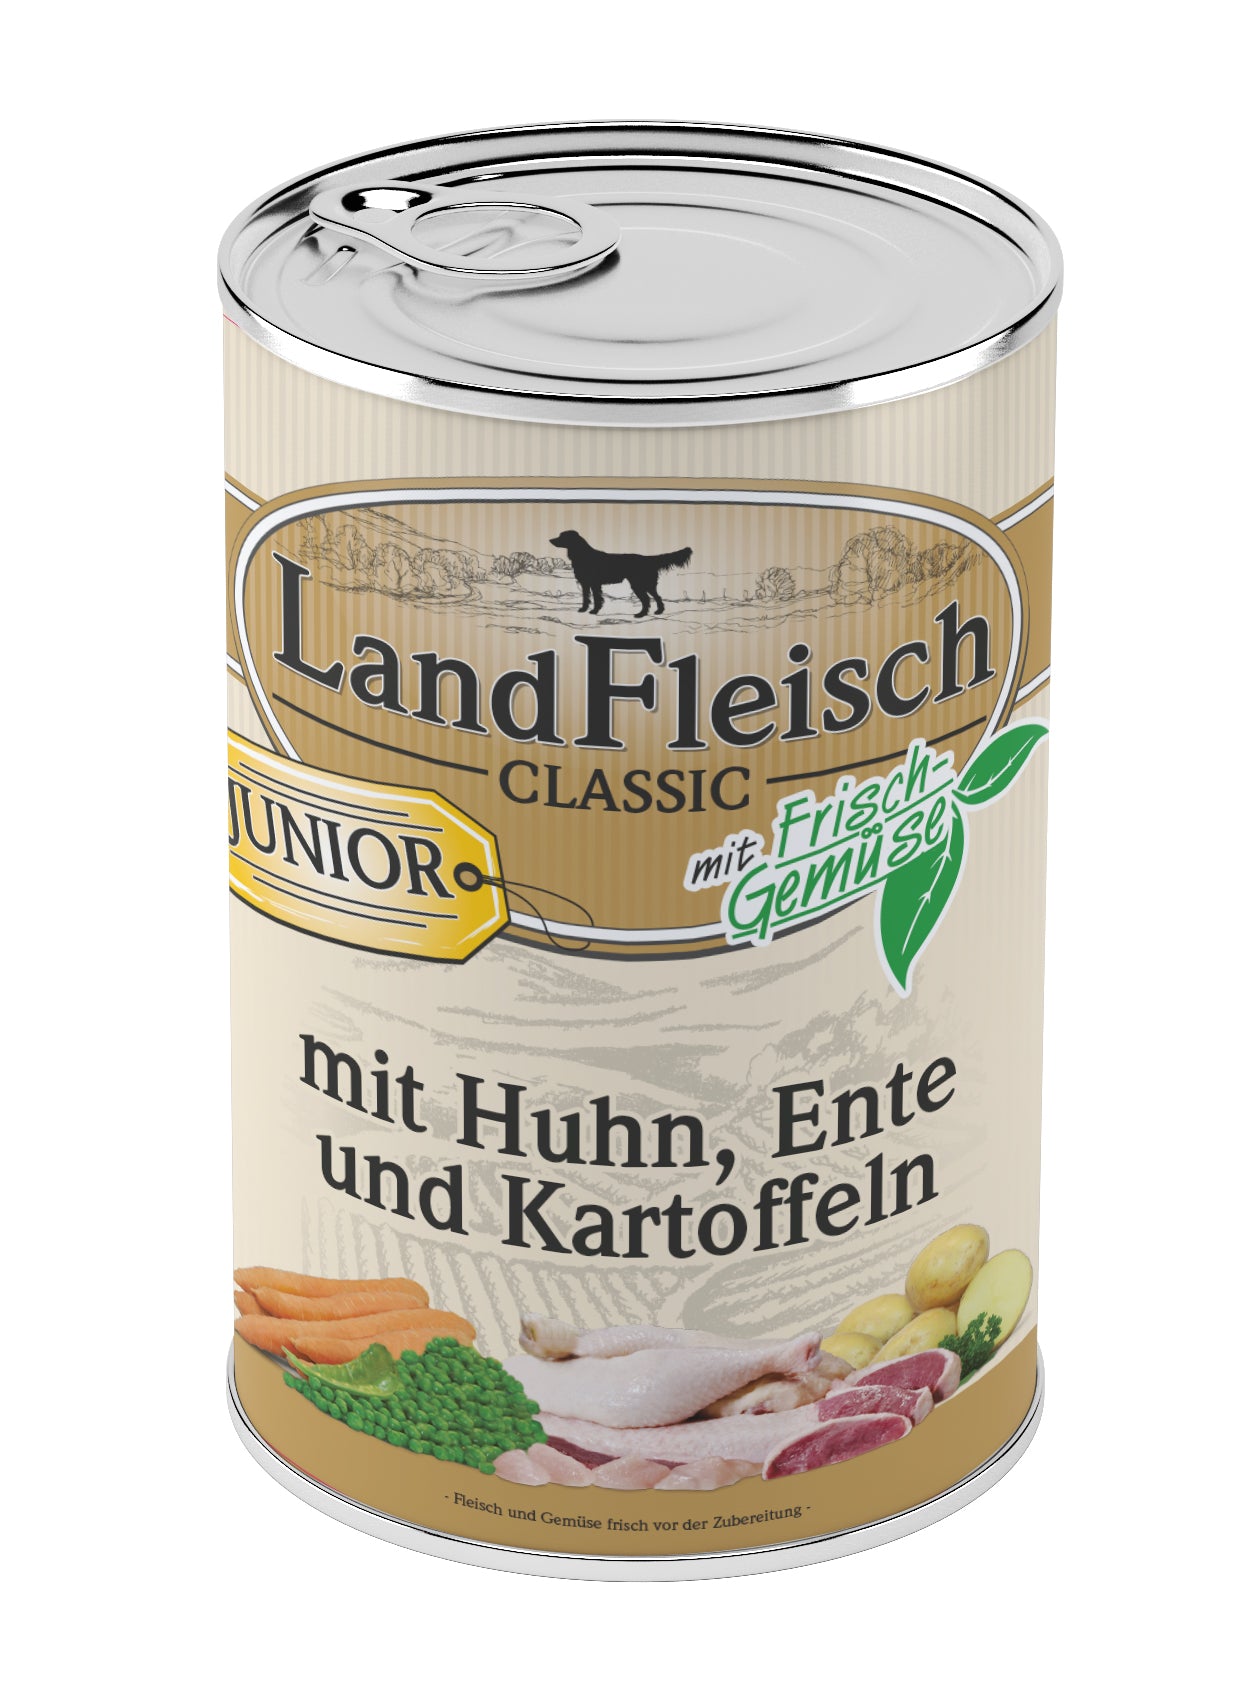 Artikel mit dem Namen LandFleisch Classic Junior Huhn &amp; Ente &amp; Kartoffeln mit Frischgemüse im Shop von zoo.de , dem Onlineshop für nachhaltiges Hundefutter und Katzenfutter.